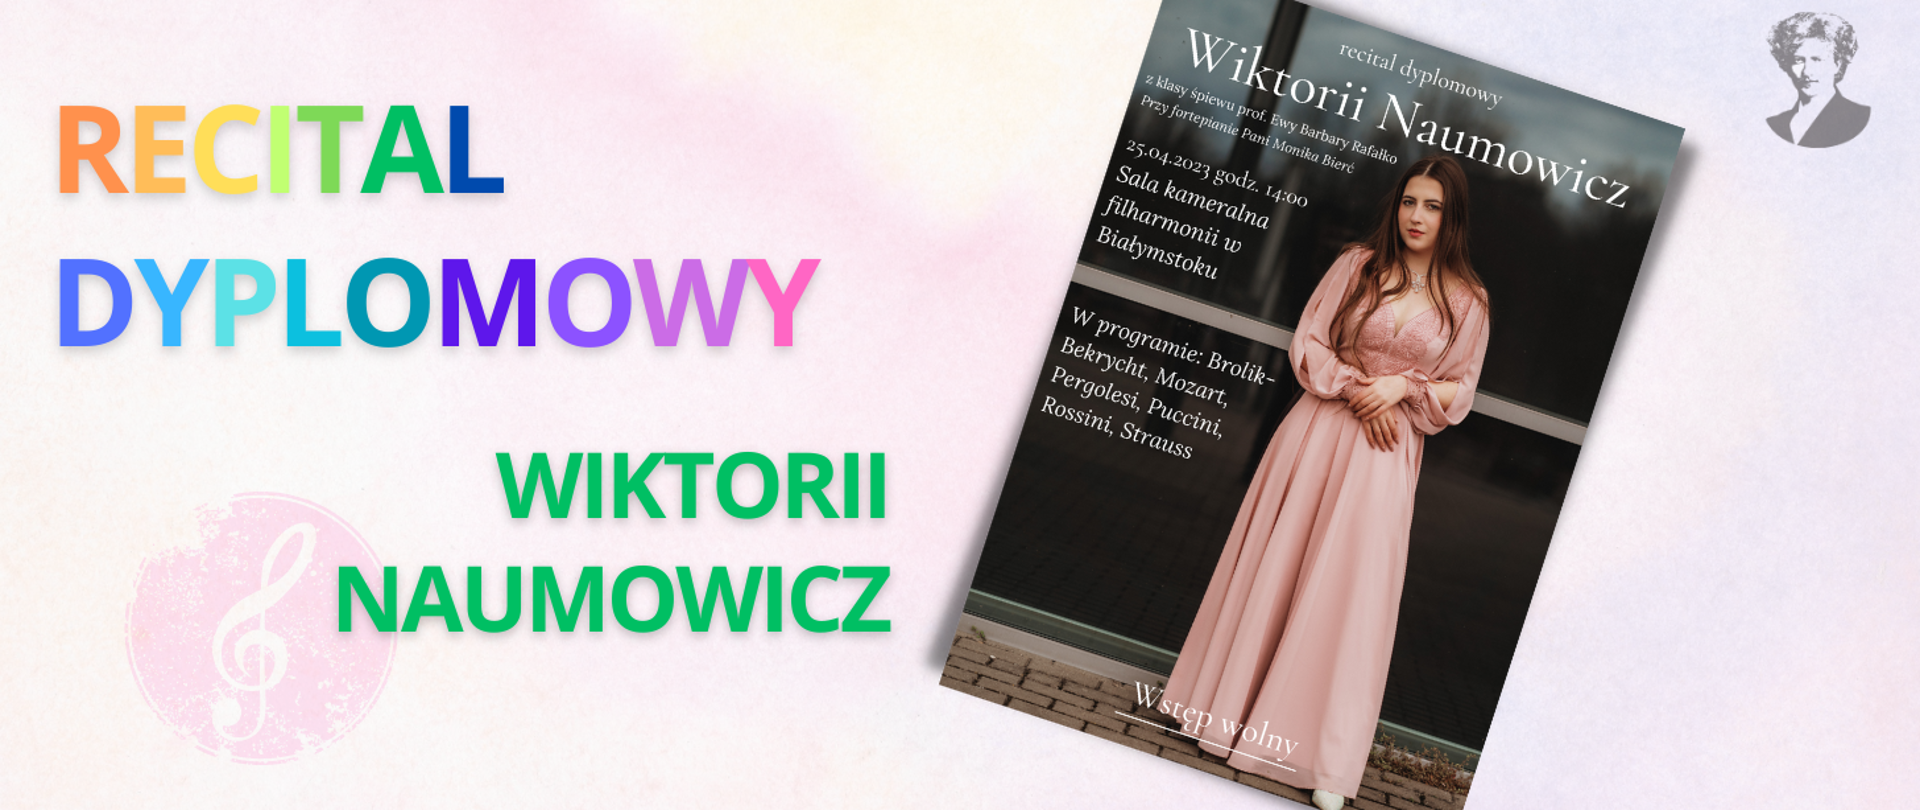 Na jasno-różowym tle wielokolorowy napis "Recital dyplomowy Wiktorii Naumowicz". Po prawej stronie miniatura plakatu oraz podobizna Ignacego Paderewskiego.